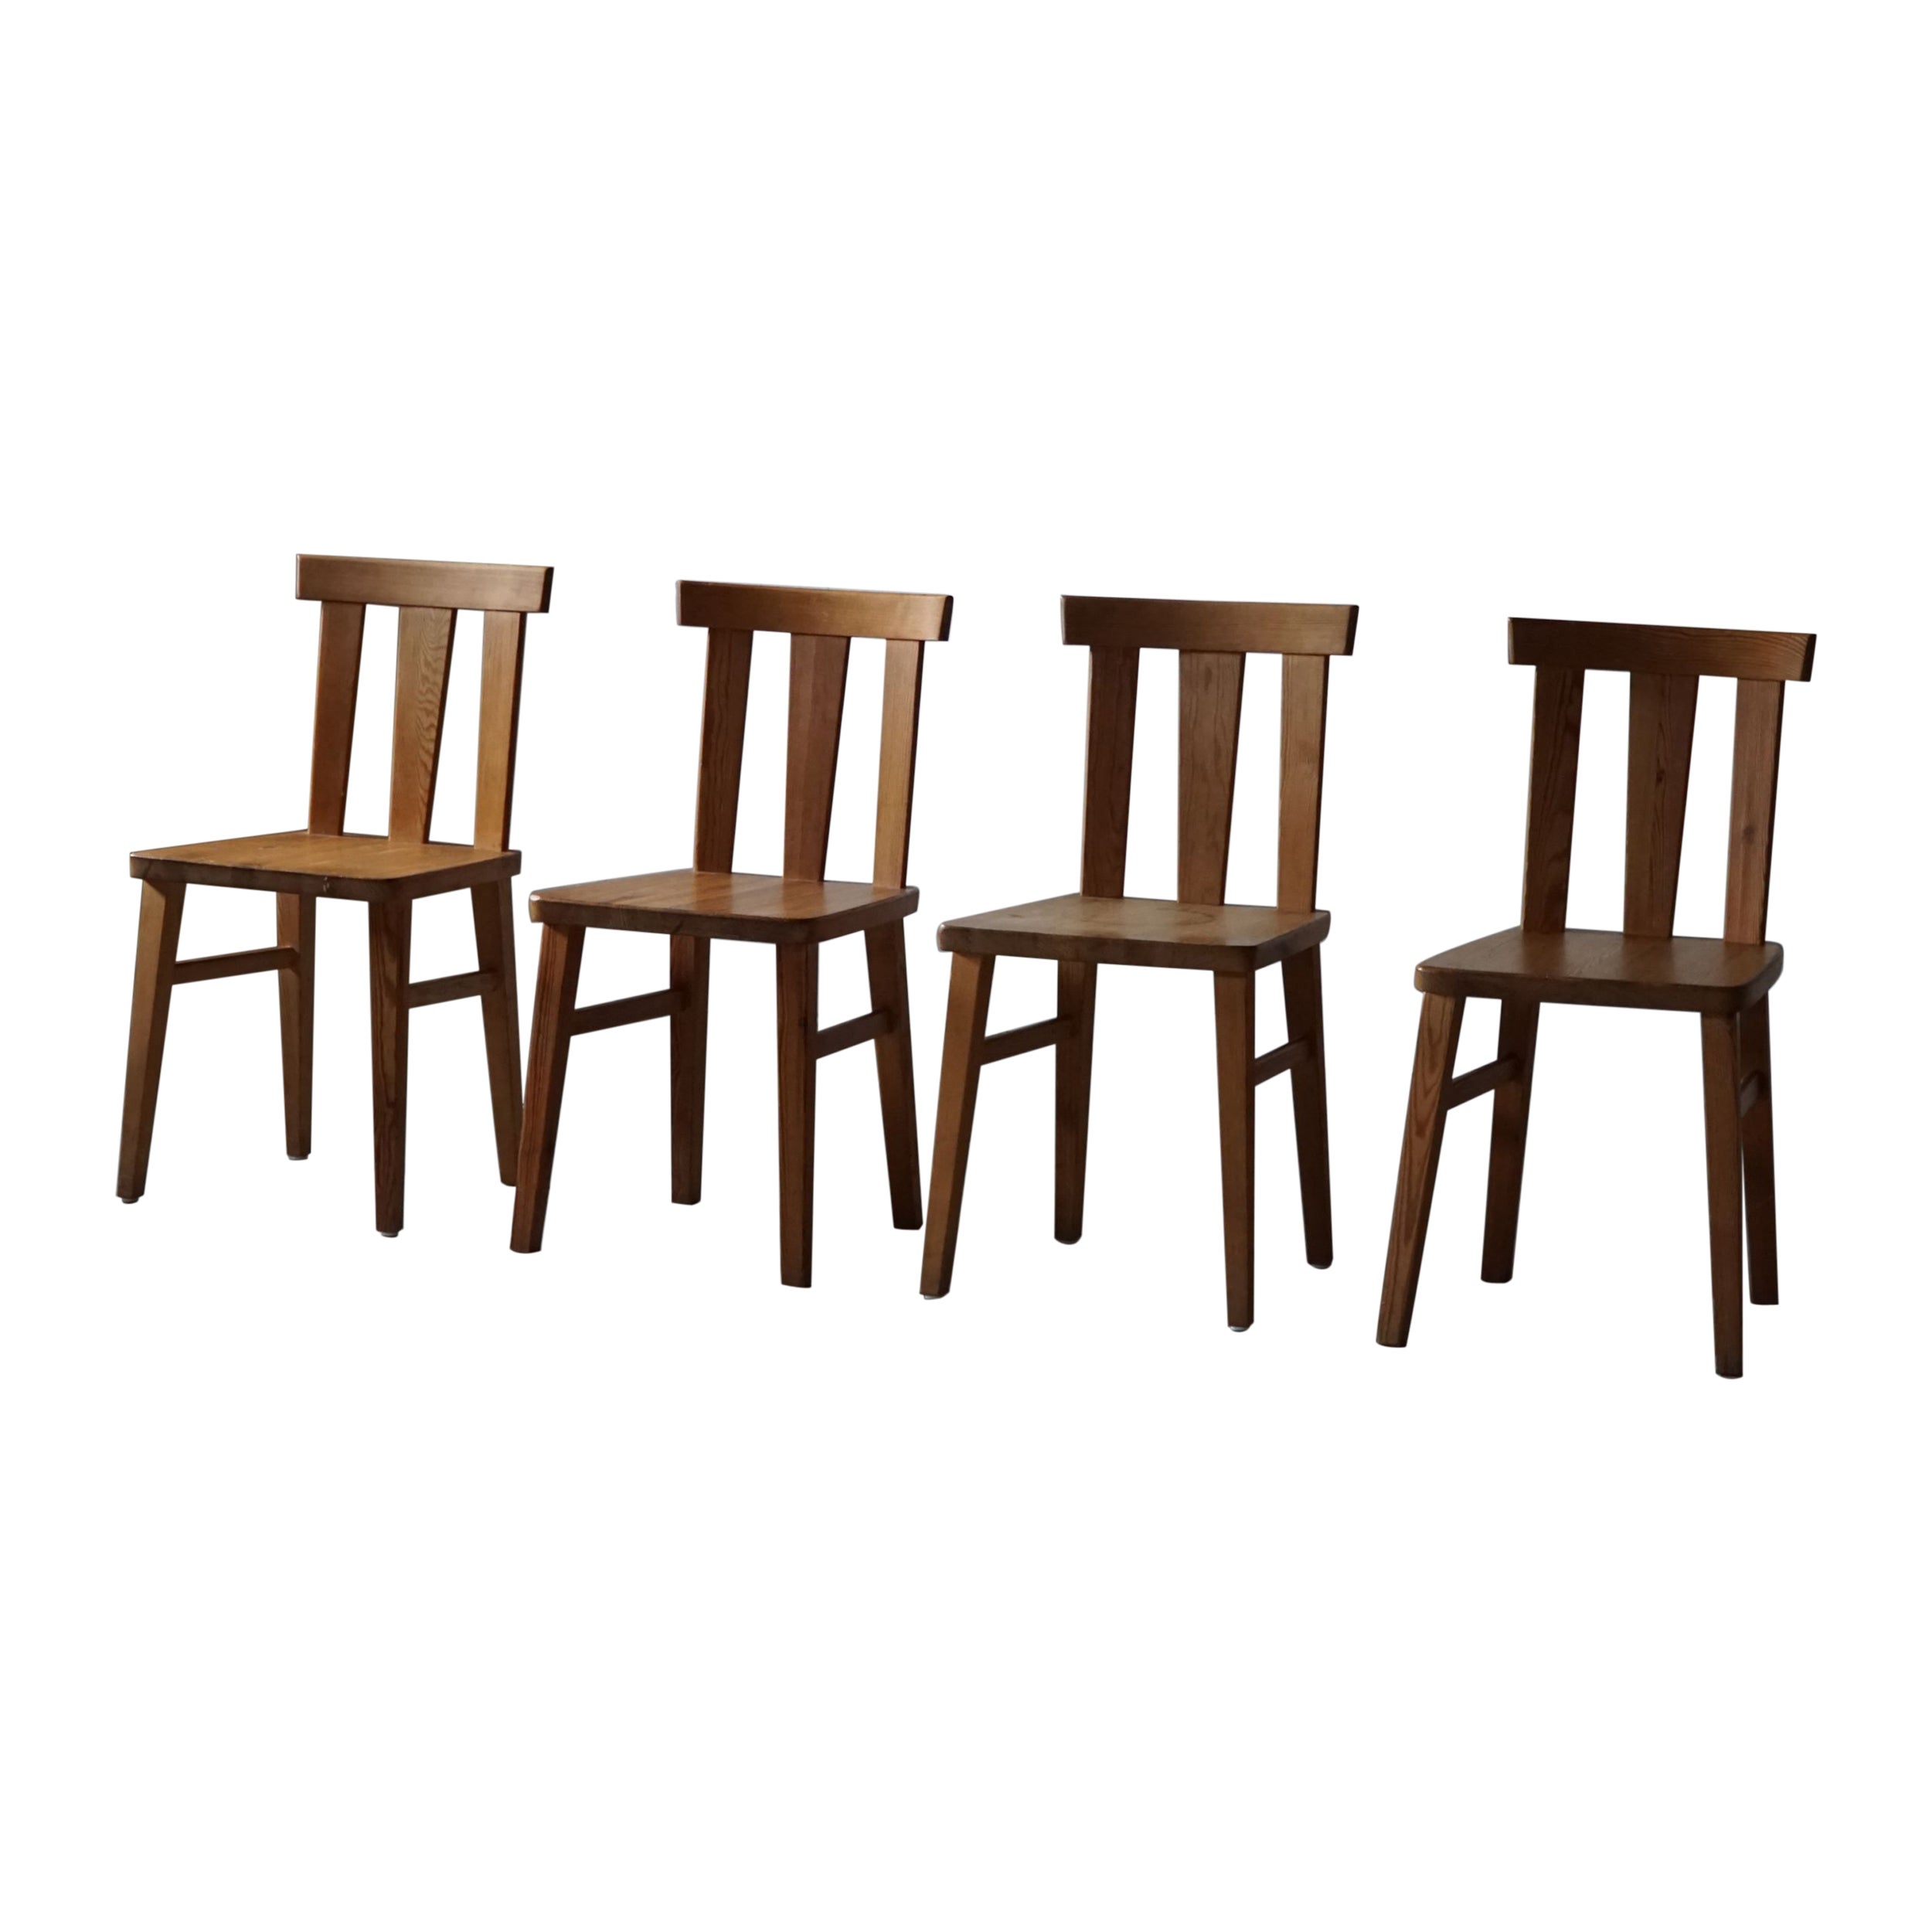 Satz von 4 modernen schwedischen Stühlen aus massivem Kiefernholz, Axel Einar Hjorth-Stil, 1930er Jahre